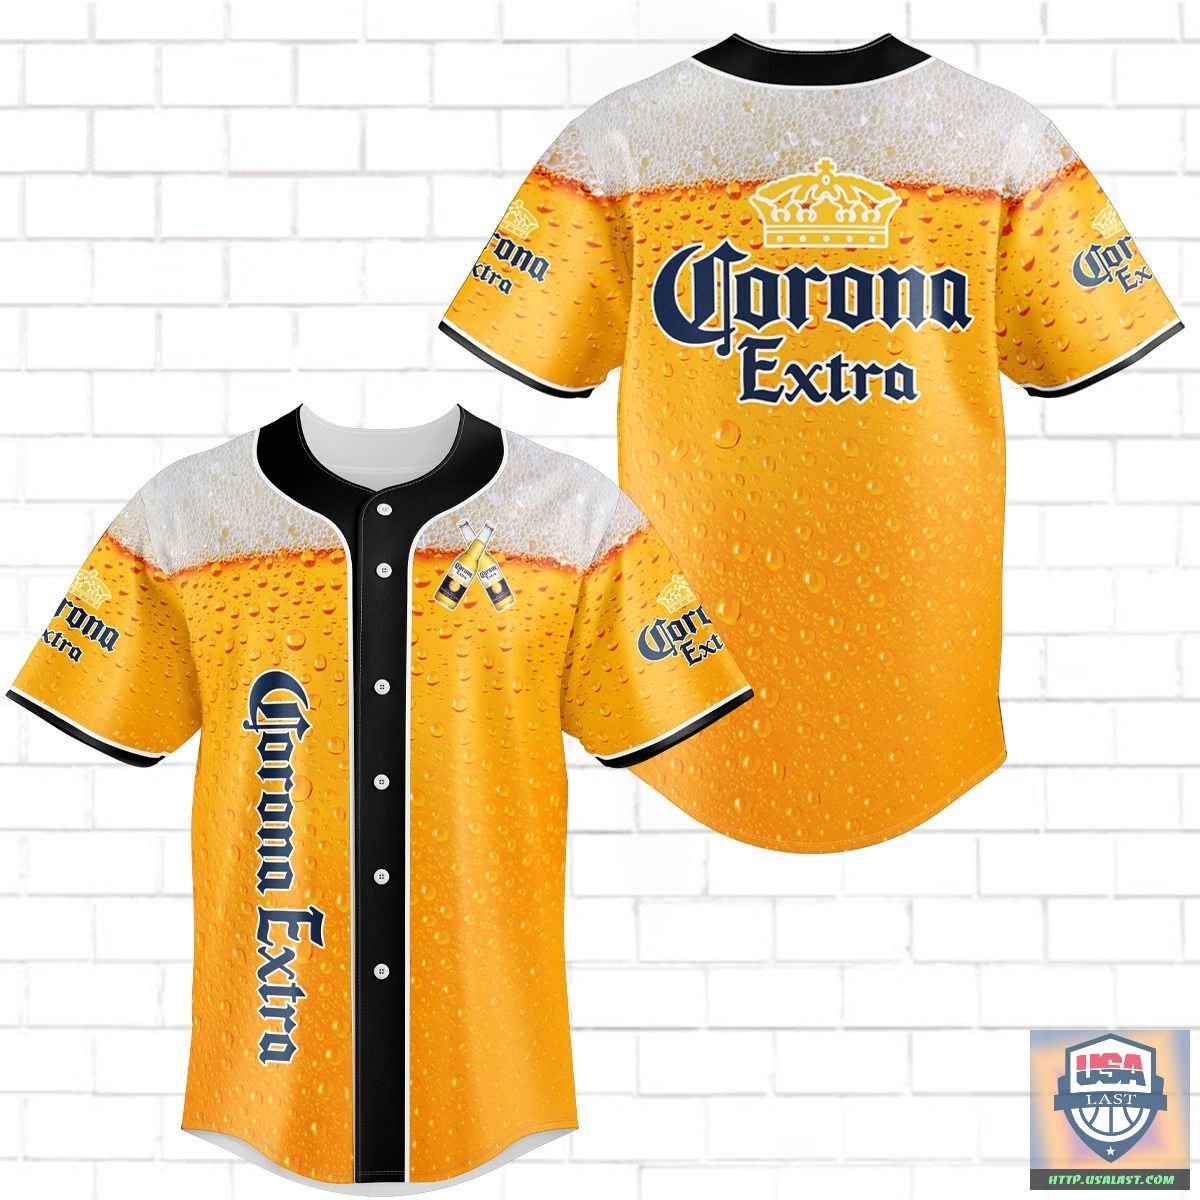 Where To Buy Corona Extra Baseball Jersey Shirt 2022